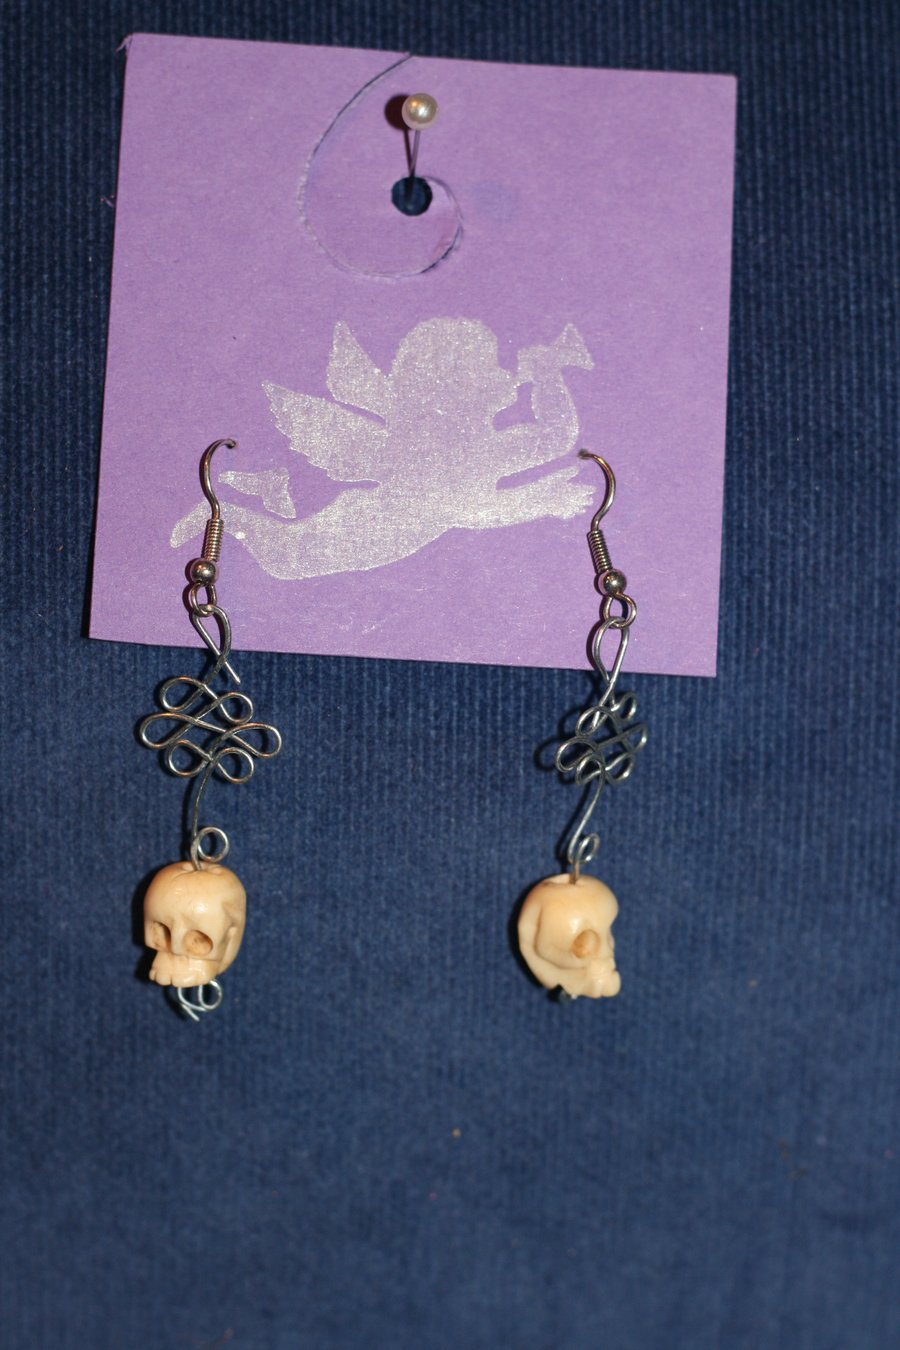 Metal work and skull bead earrings